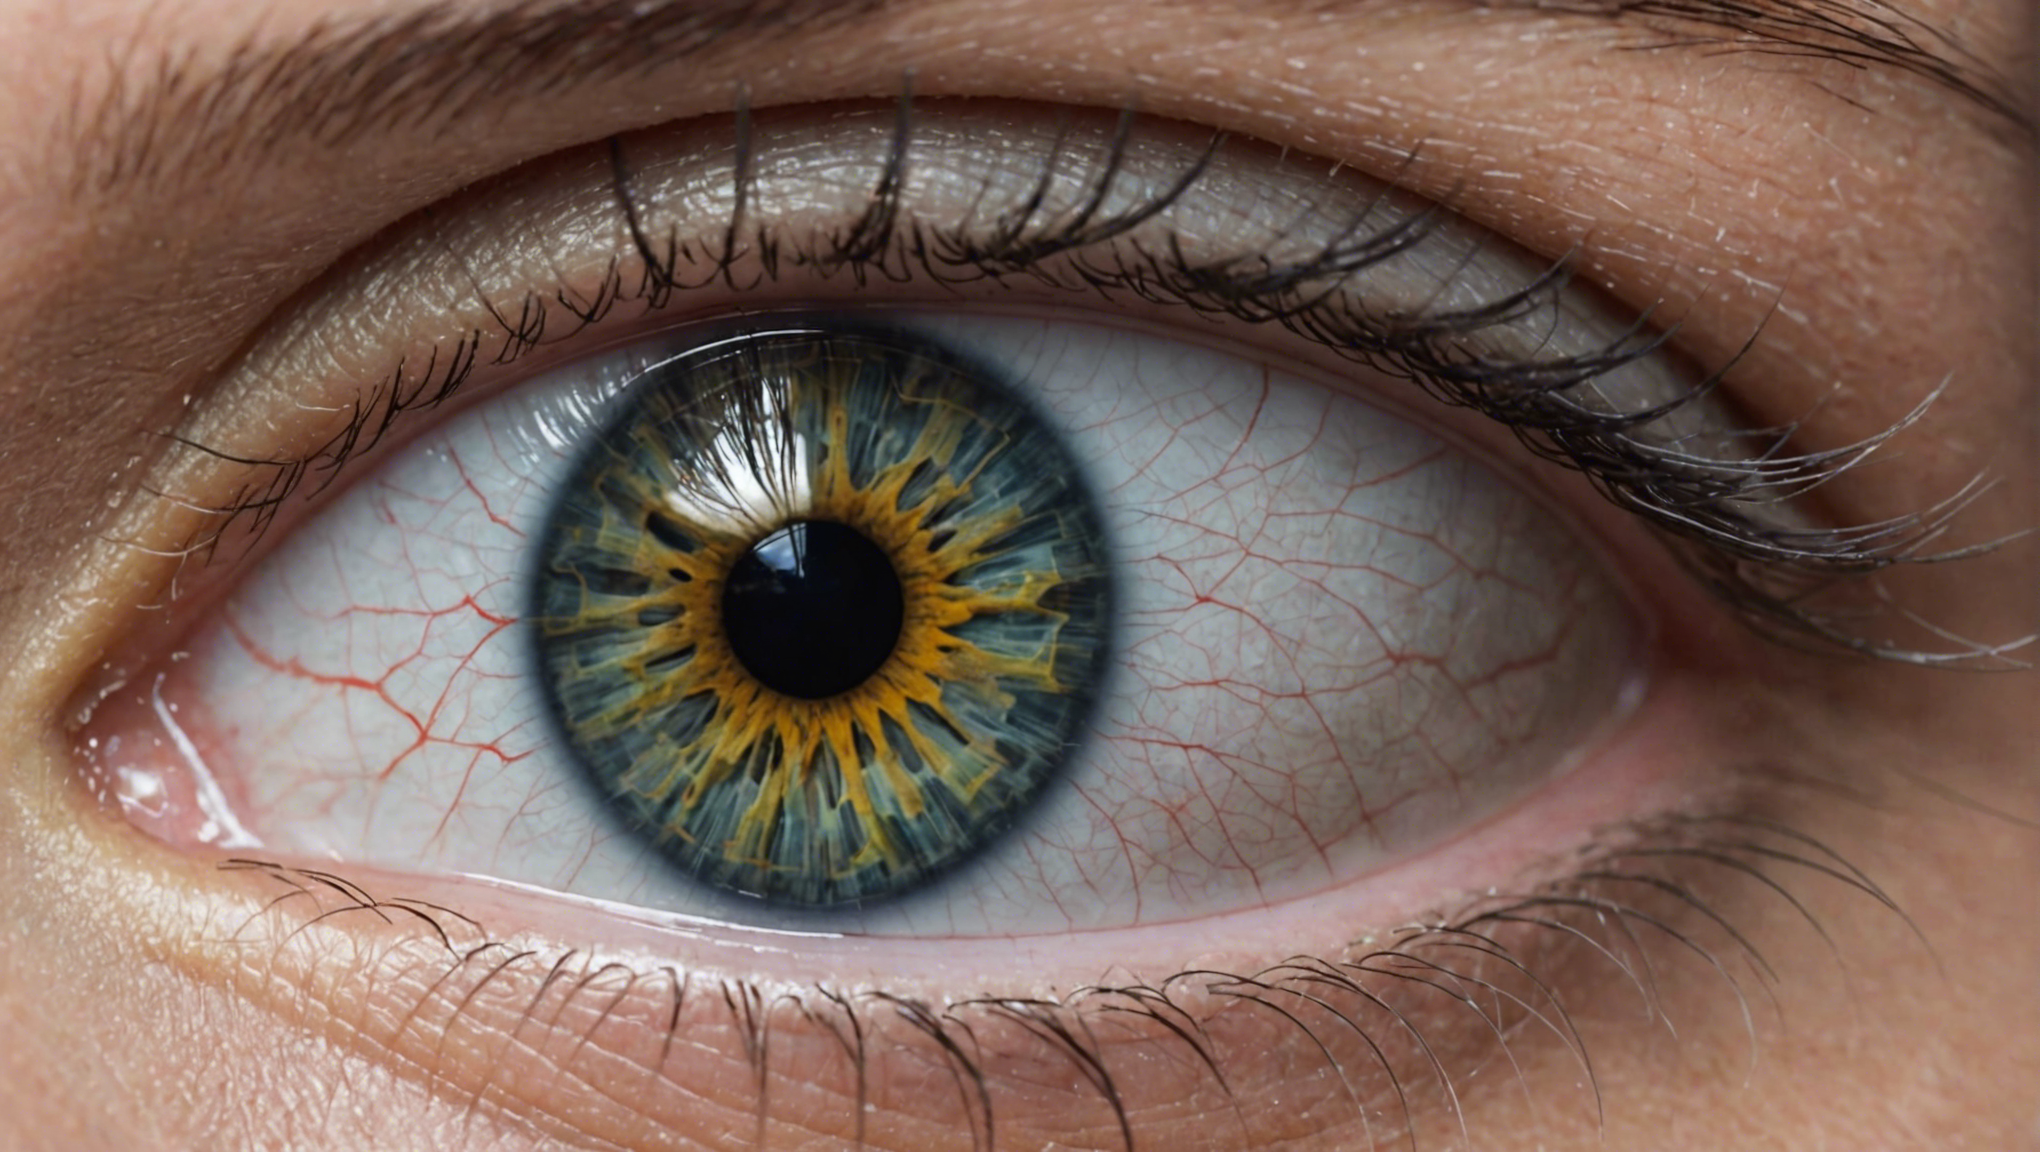 découvrez l'importance du suivi médical et des ajustements des yeux pour préserver votre santé visuelle et maintenir une vision optimale. les conseils d'experts pour des soins oculaires adaptés à vos besoins.